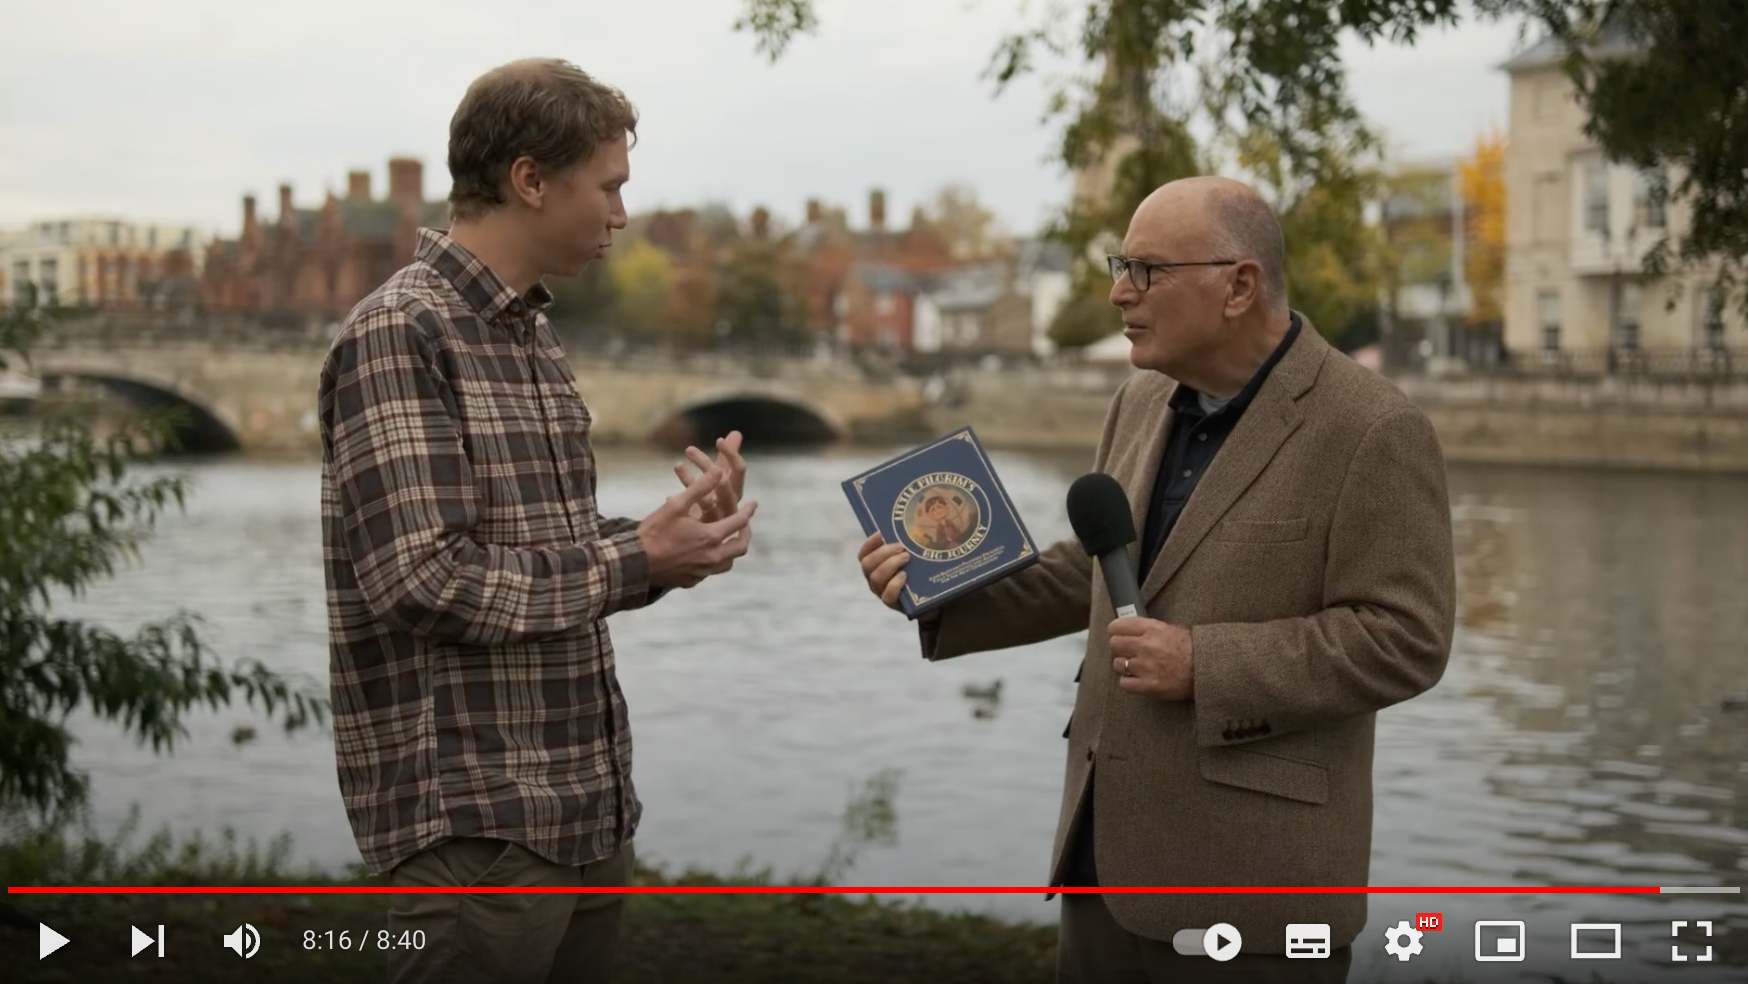 Load video: Charles Morris with Haven Today interviews Tyler Van Halteren in Bedford, England.